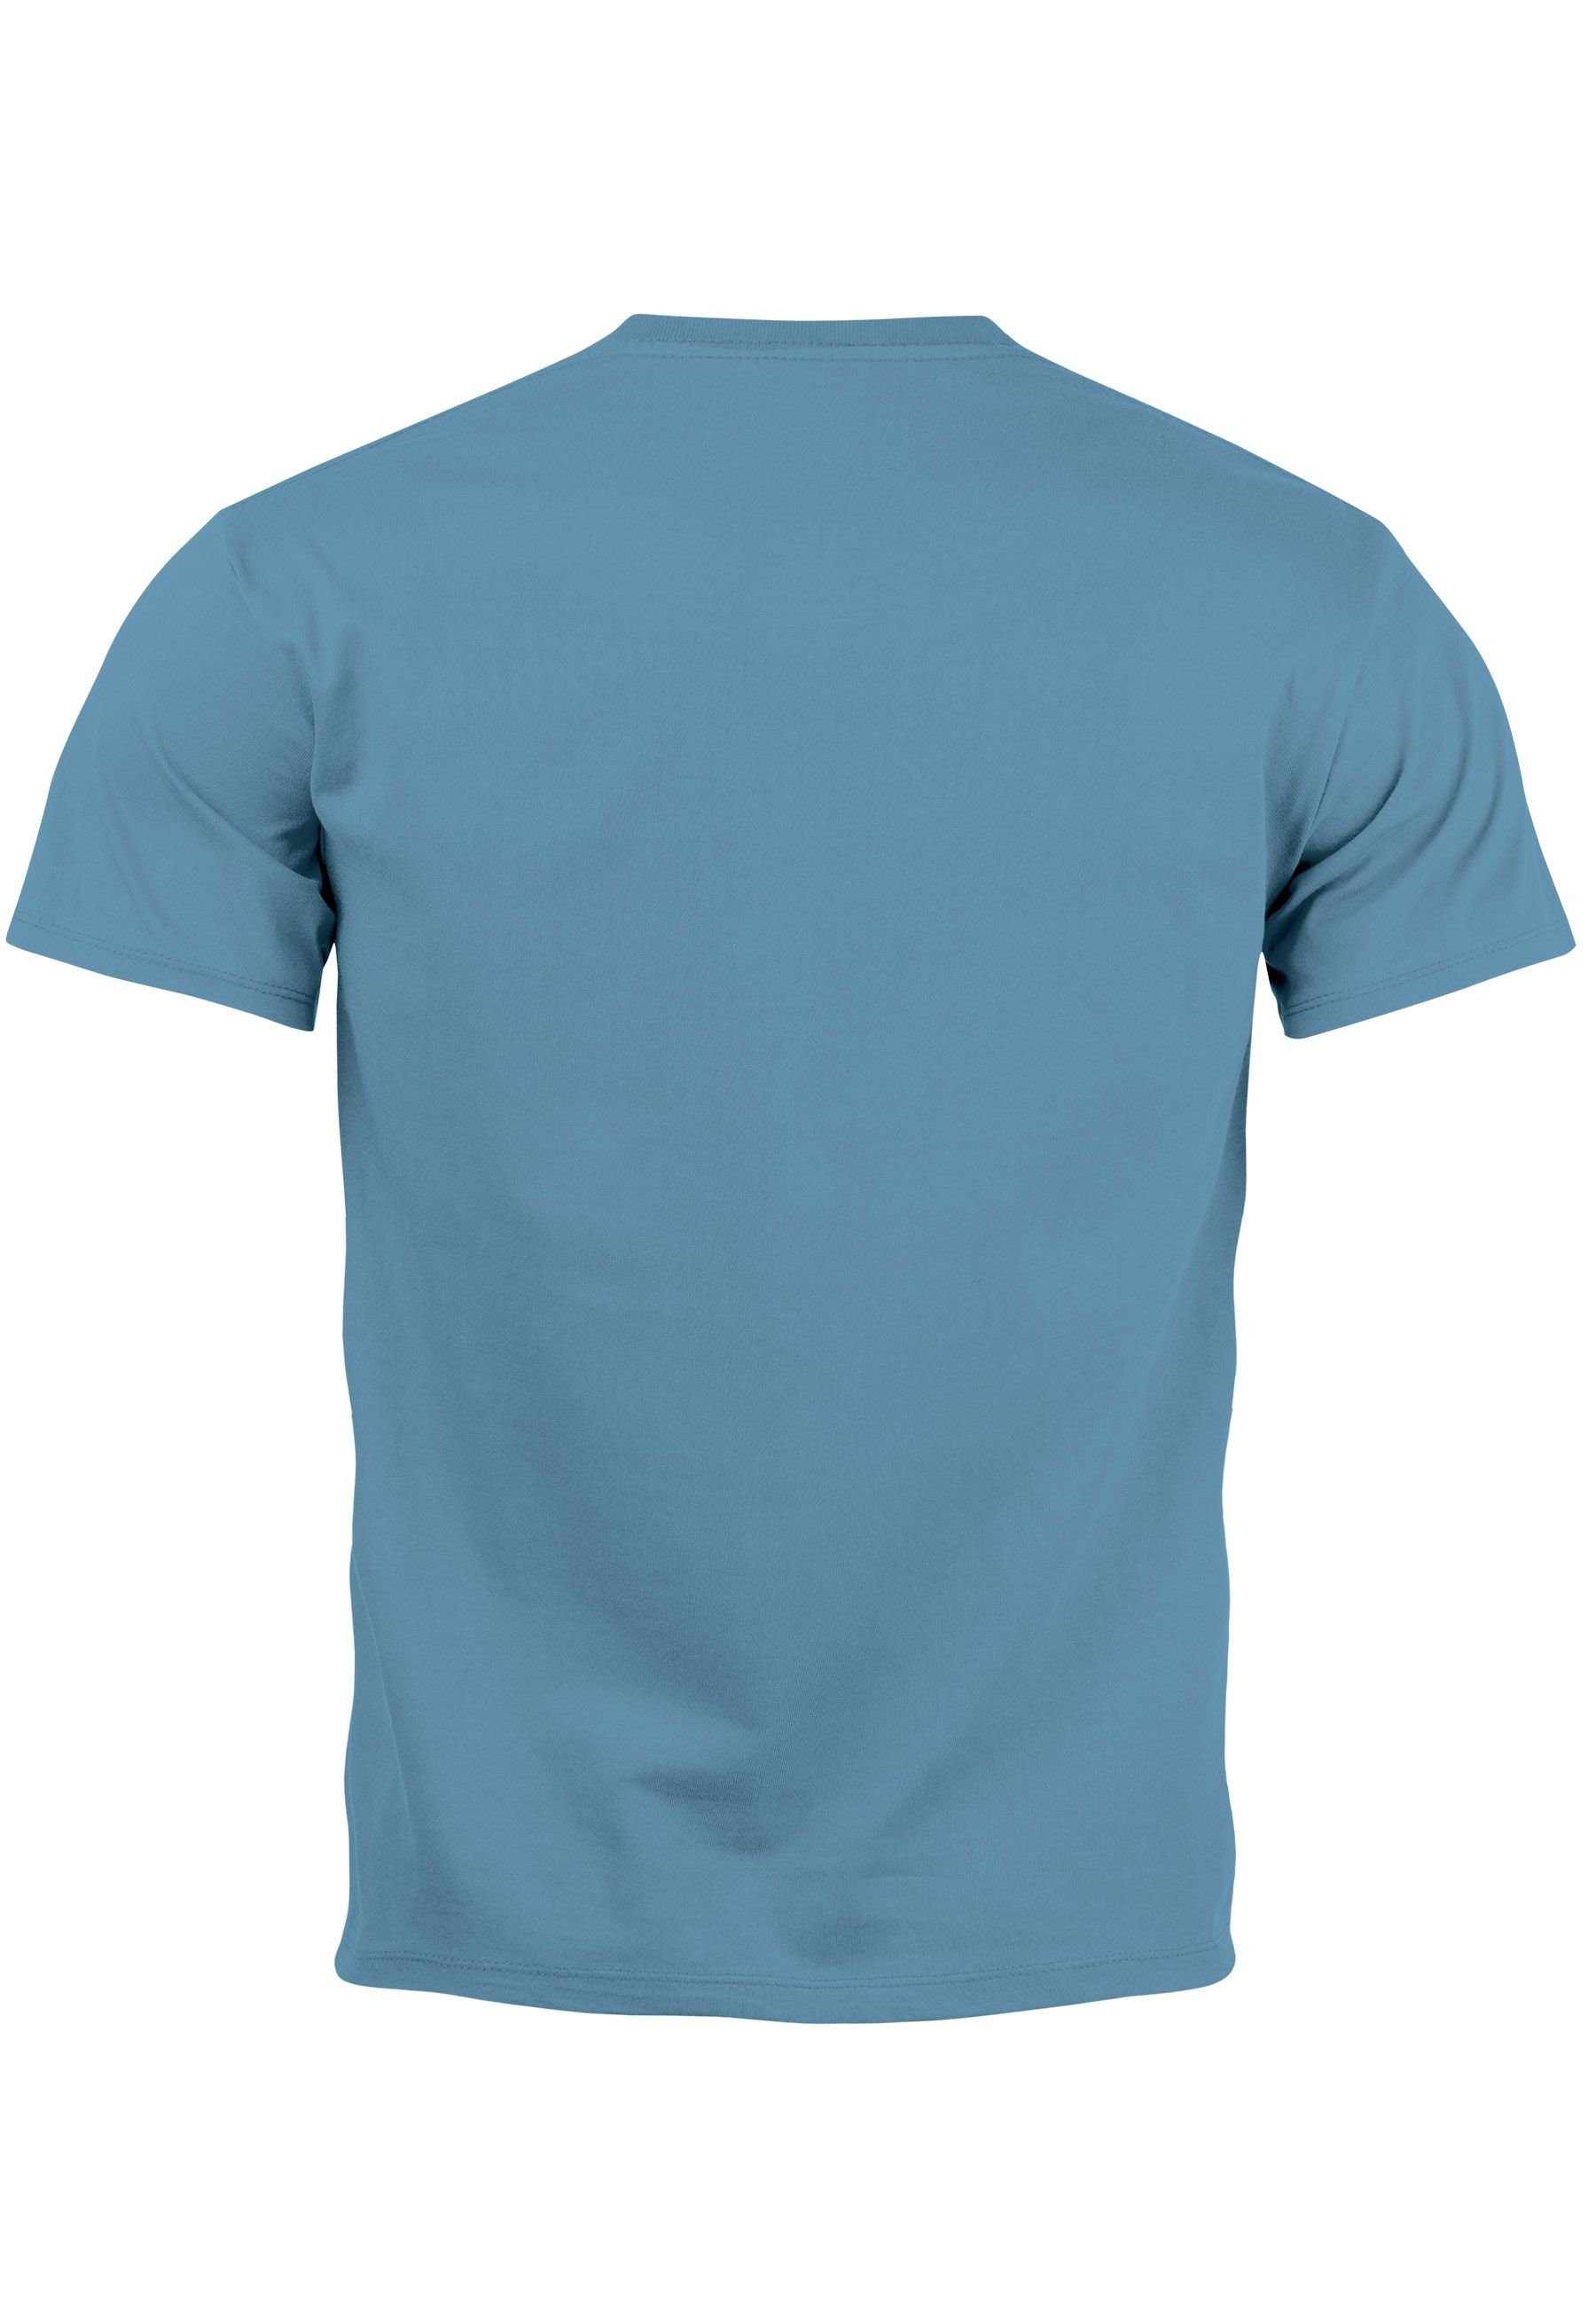 T-Shirt Print Hai mit Bär Printshirt Neverless blue Herren Hi Witz Print-Shirt Teddy Parodie Fashi stone Aufdruck